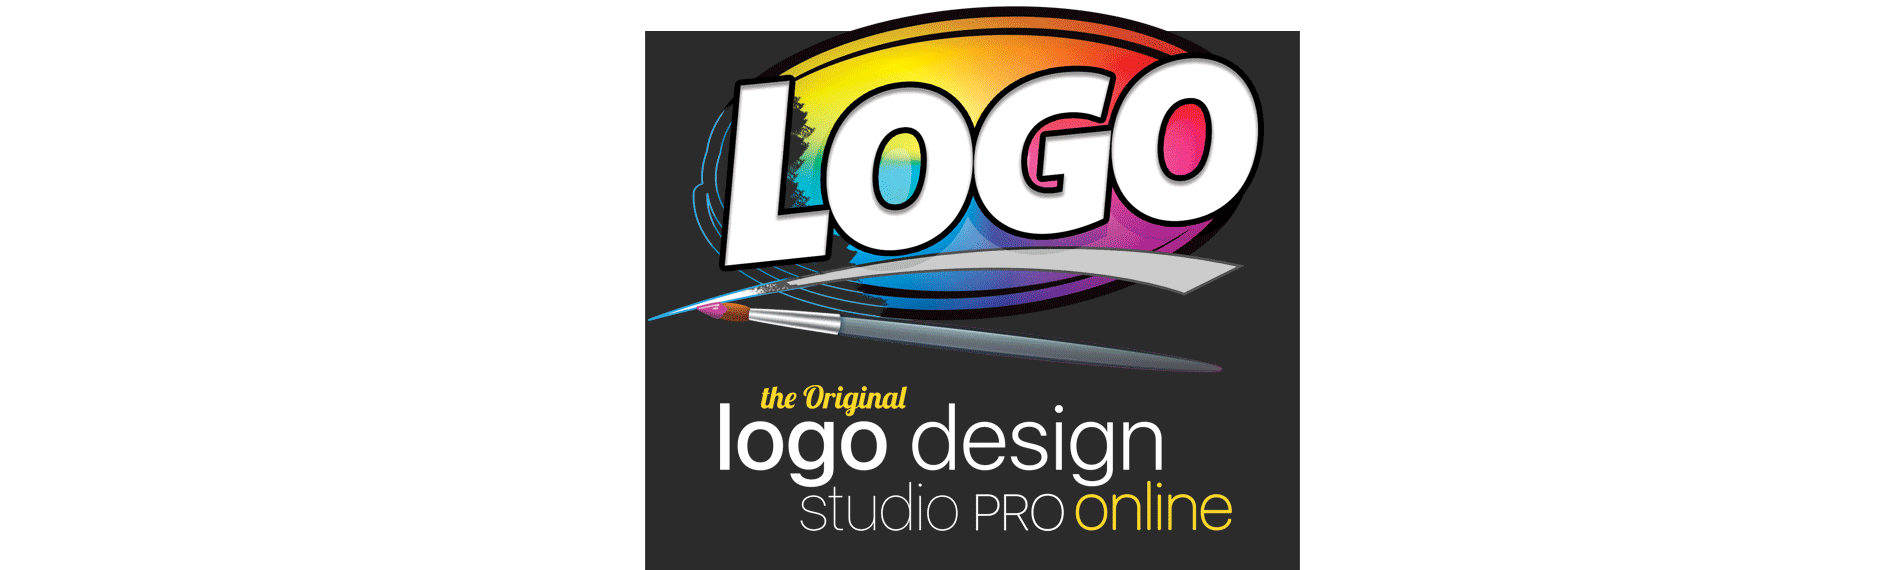 graphic design studio logos